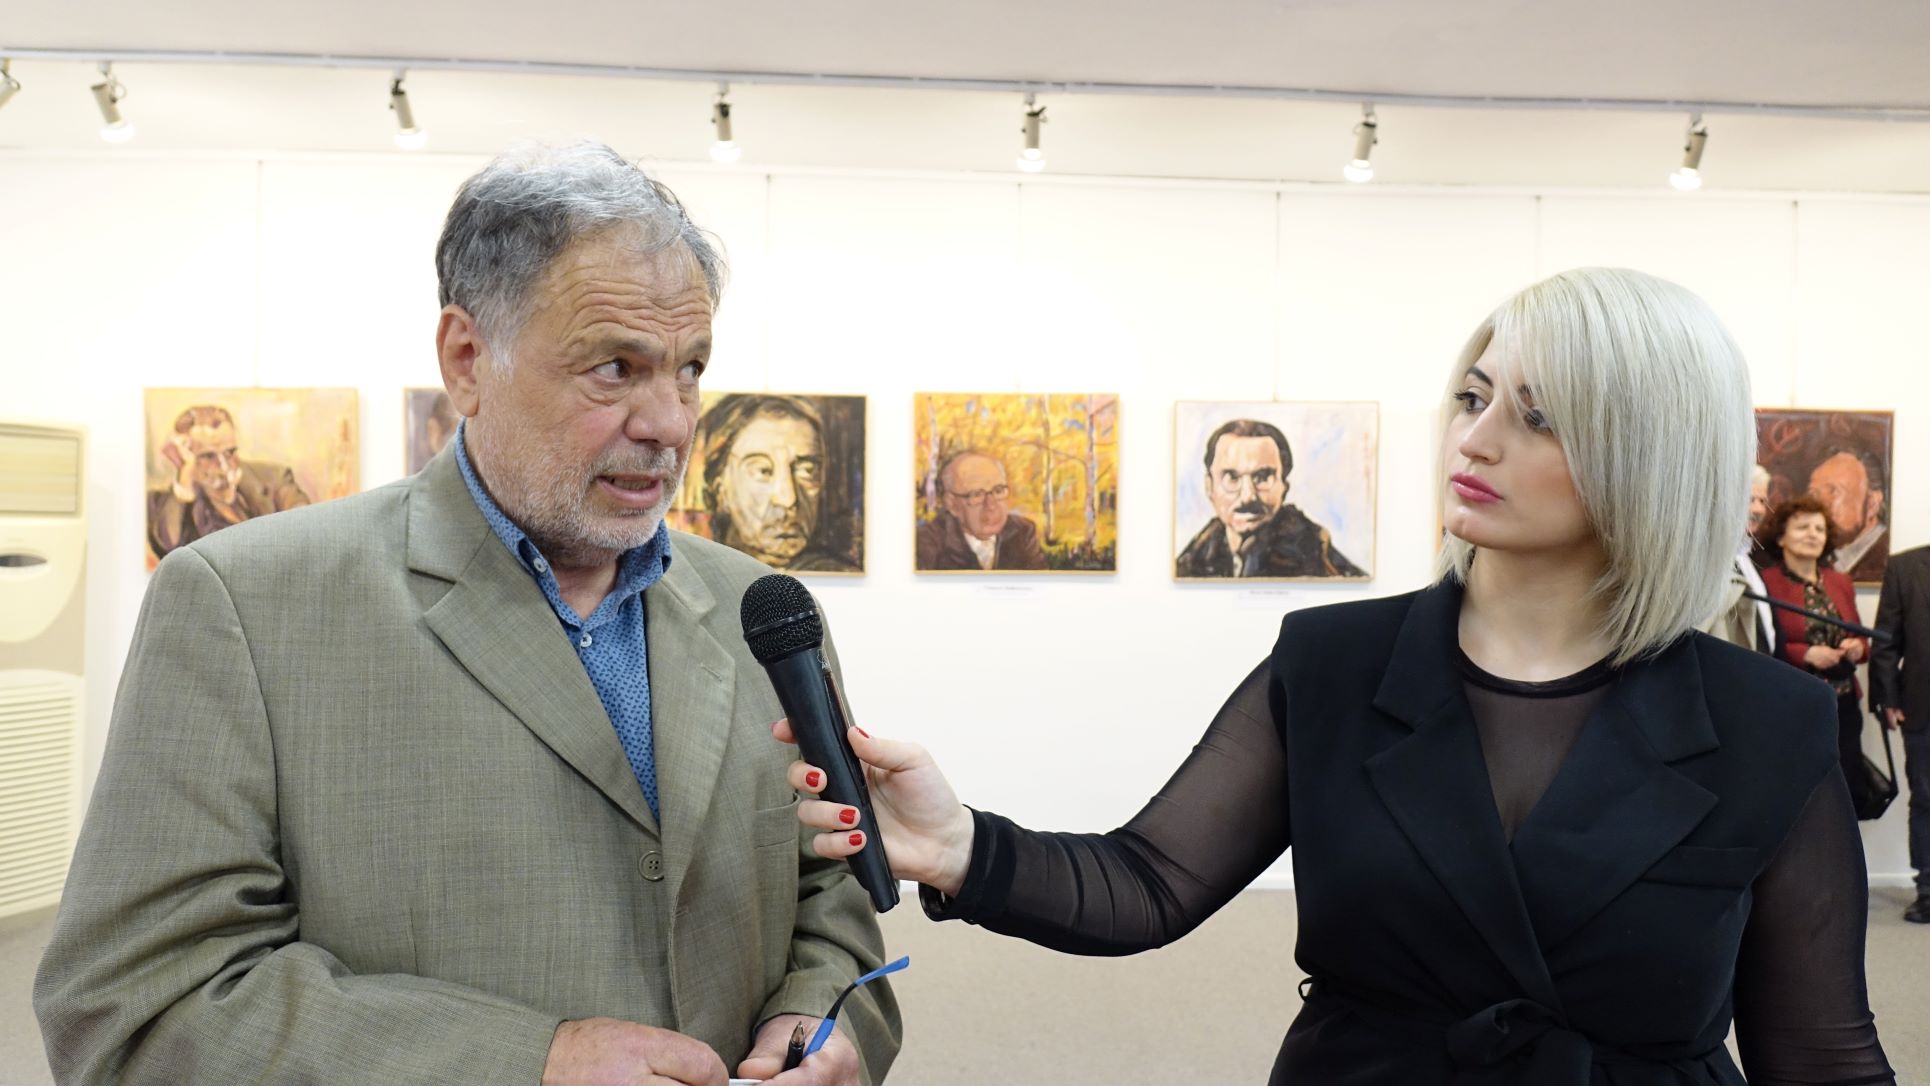 Έλληνες με ταξίδεψαν Μέσα από τα μάτια του μεγάλου ζωγράφου Ντίνου Γιωτόπουλου